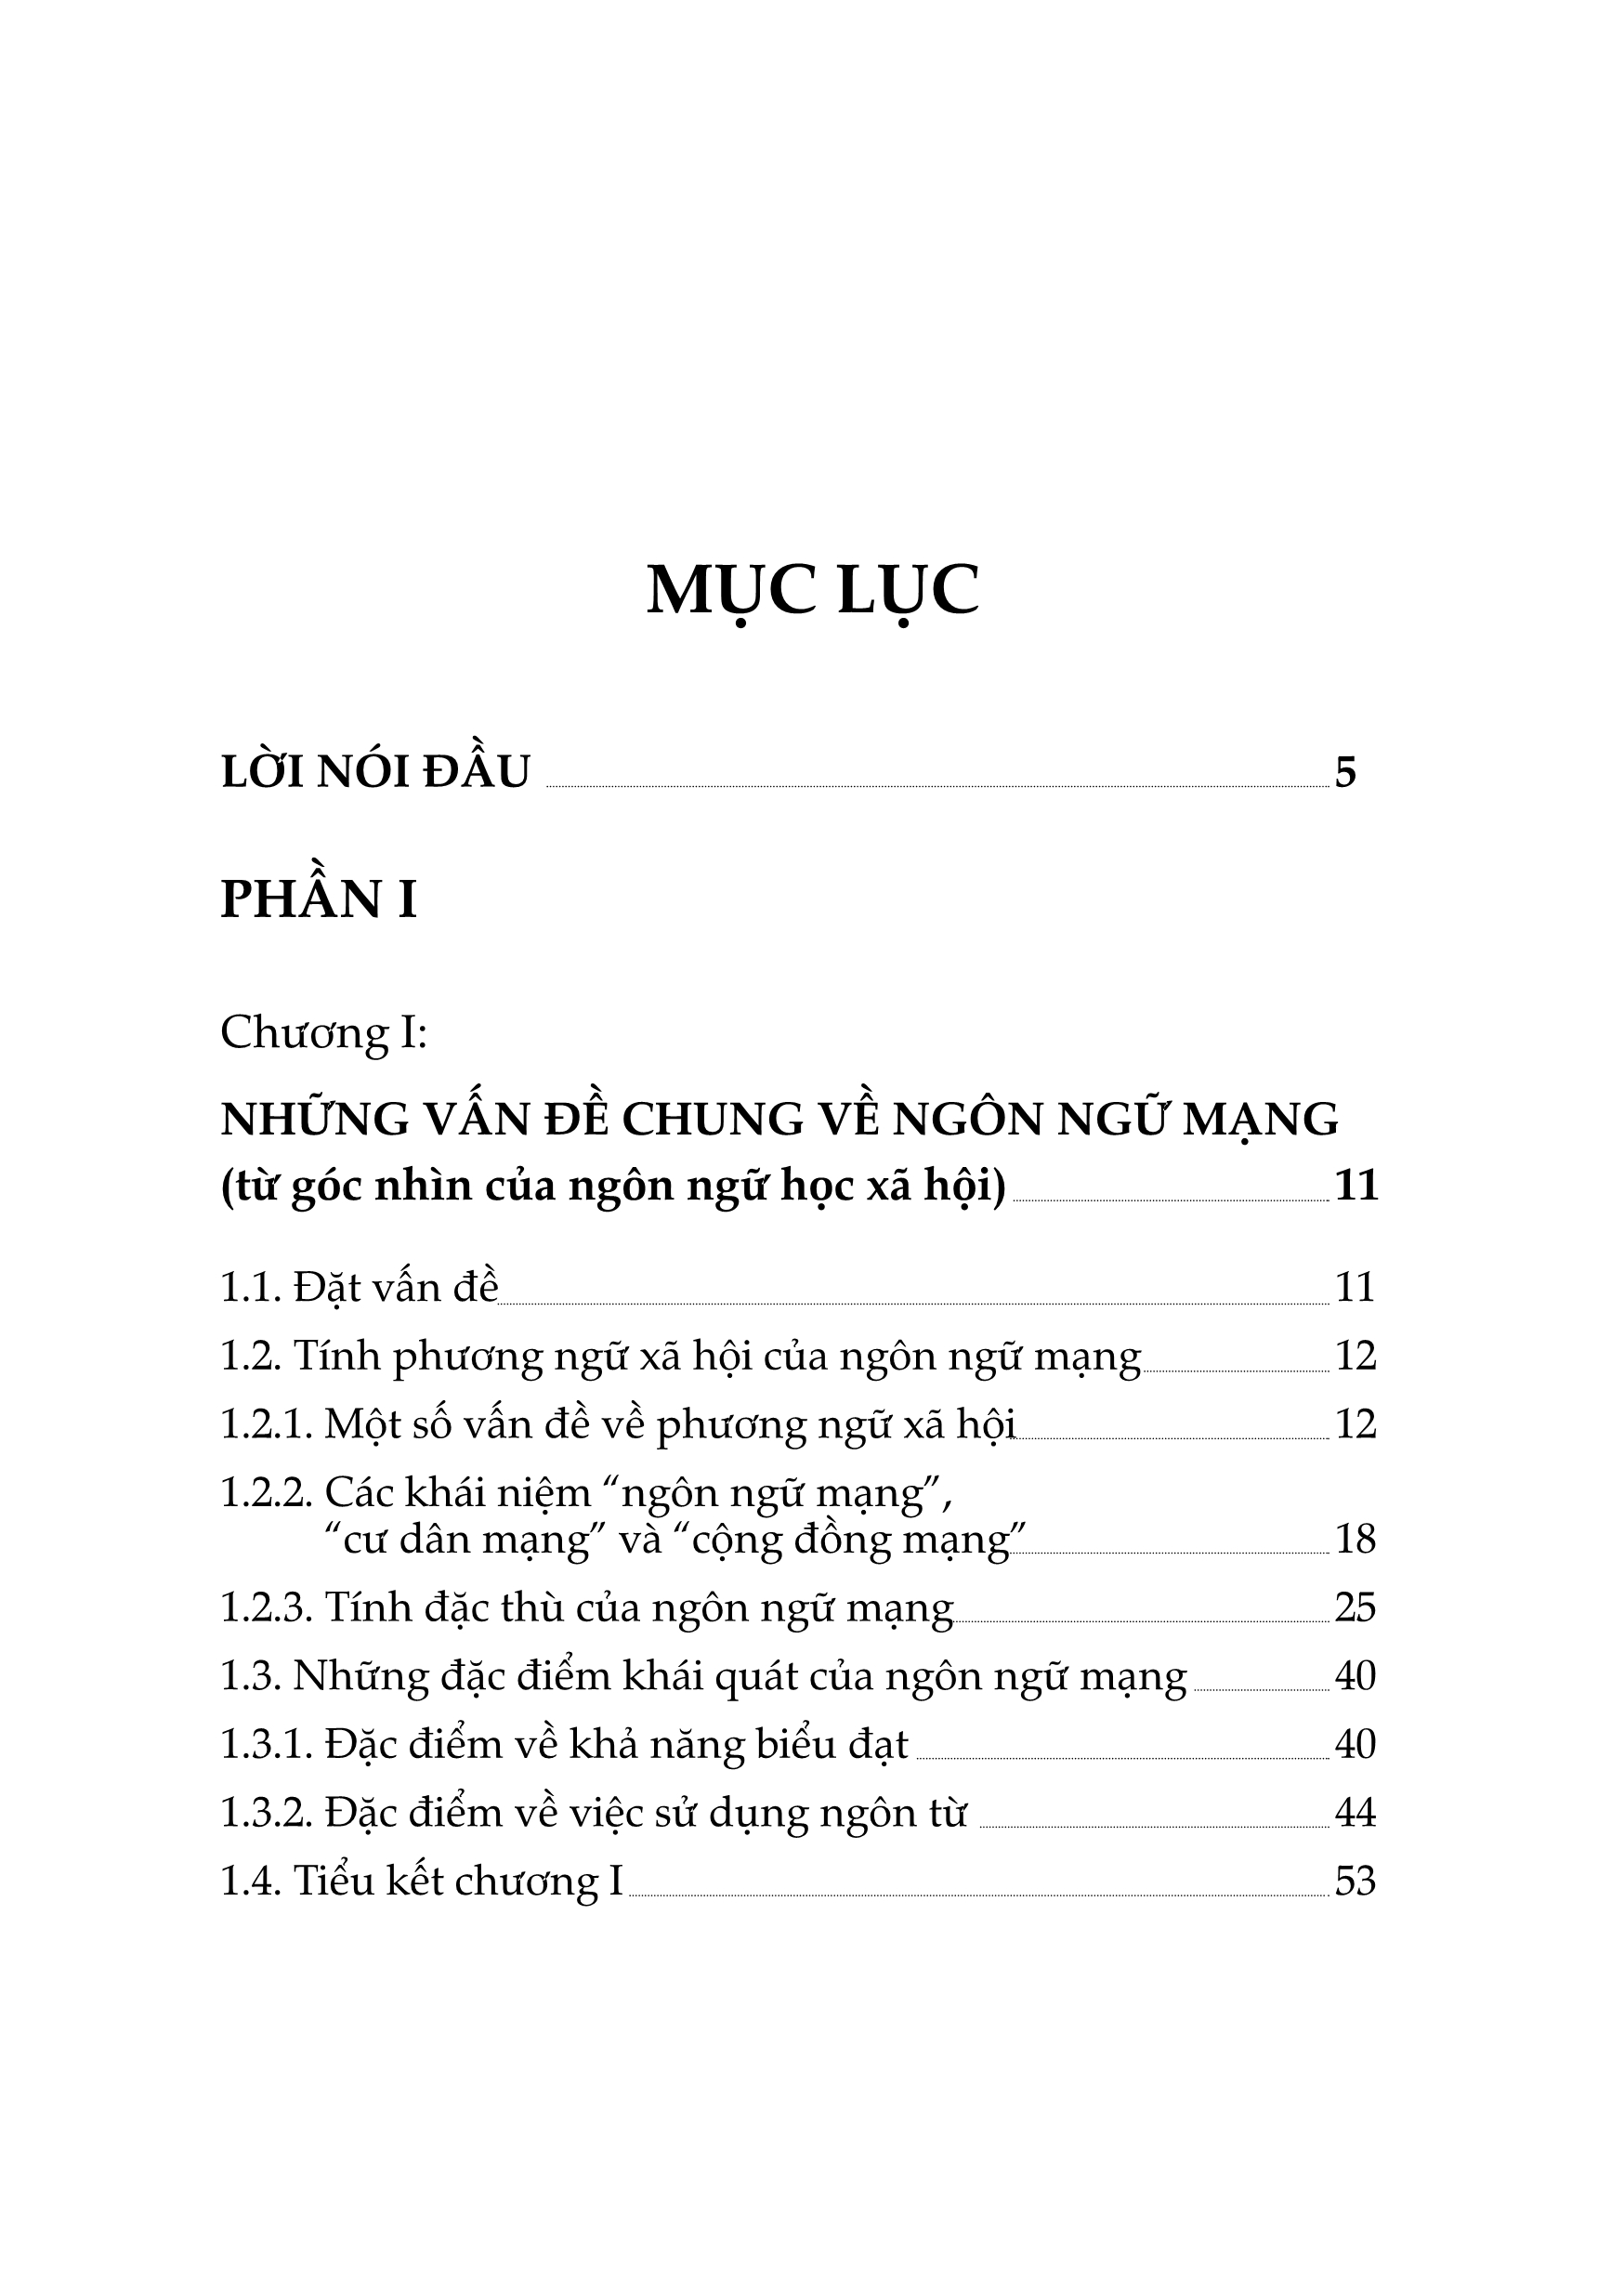 Ngôn Ngữ Mạng - Biến Thể Ngôn Ngữ Trên Mạng Tiếng Việt